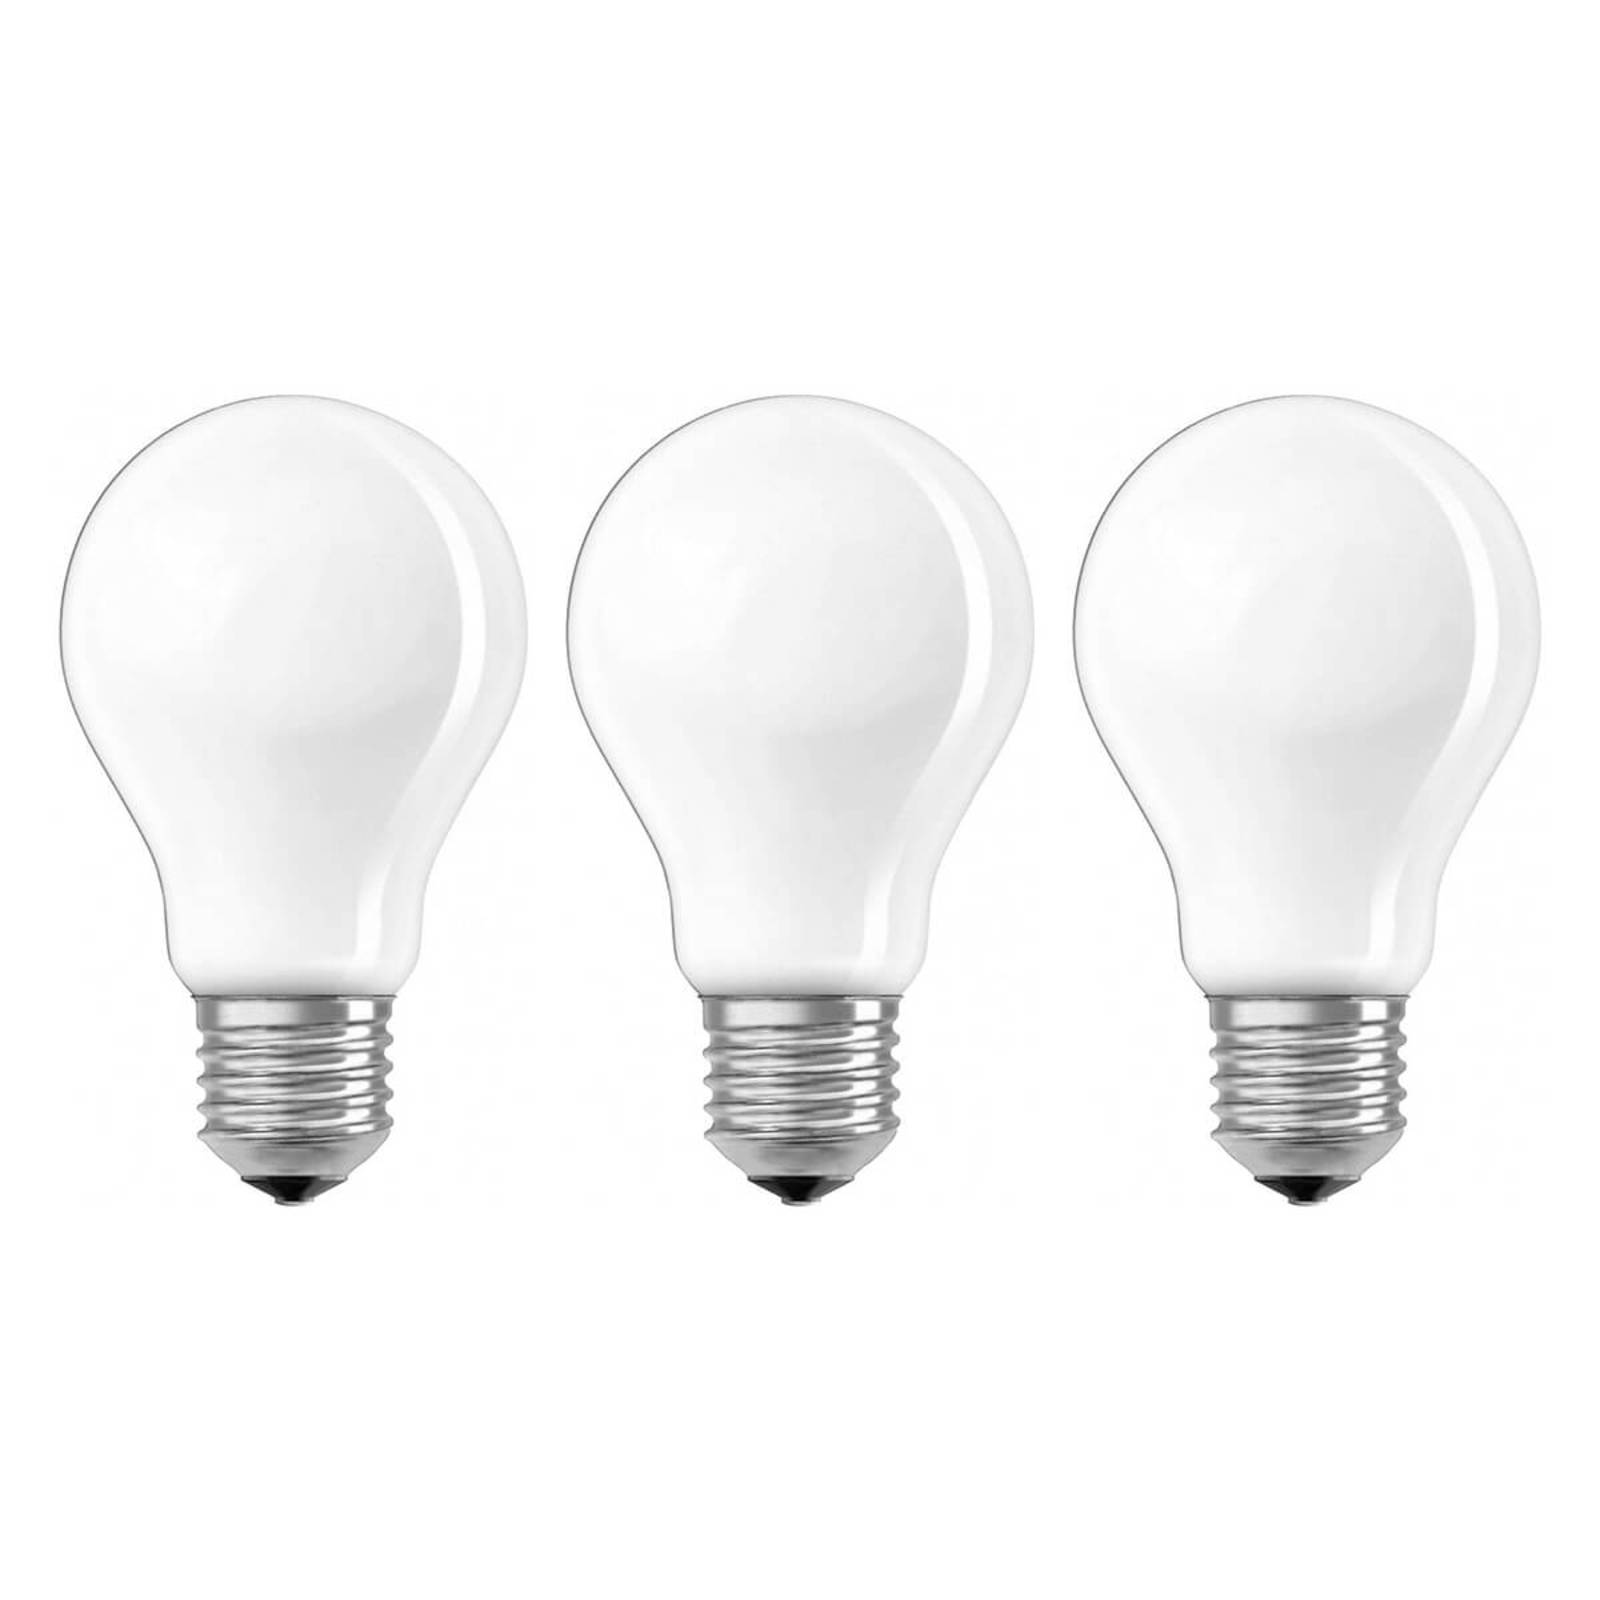 Osram LED-Lampe E27 7W, 806 Lumen, 3er-Set